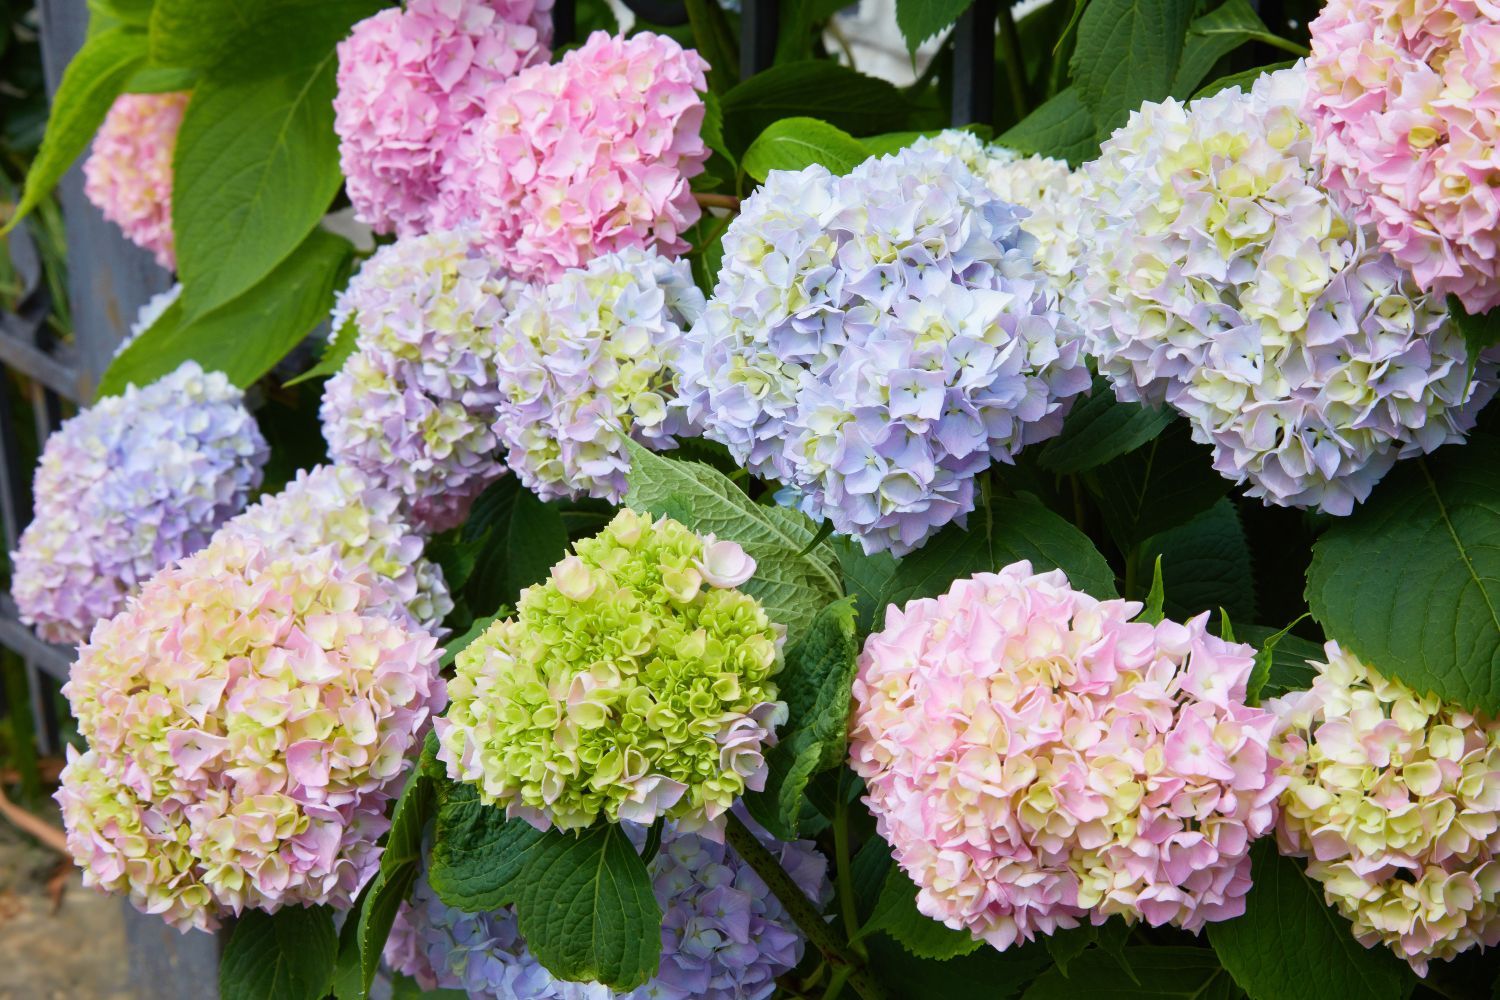 Types of hydrangeas: the best hydrangea varieties for your garden